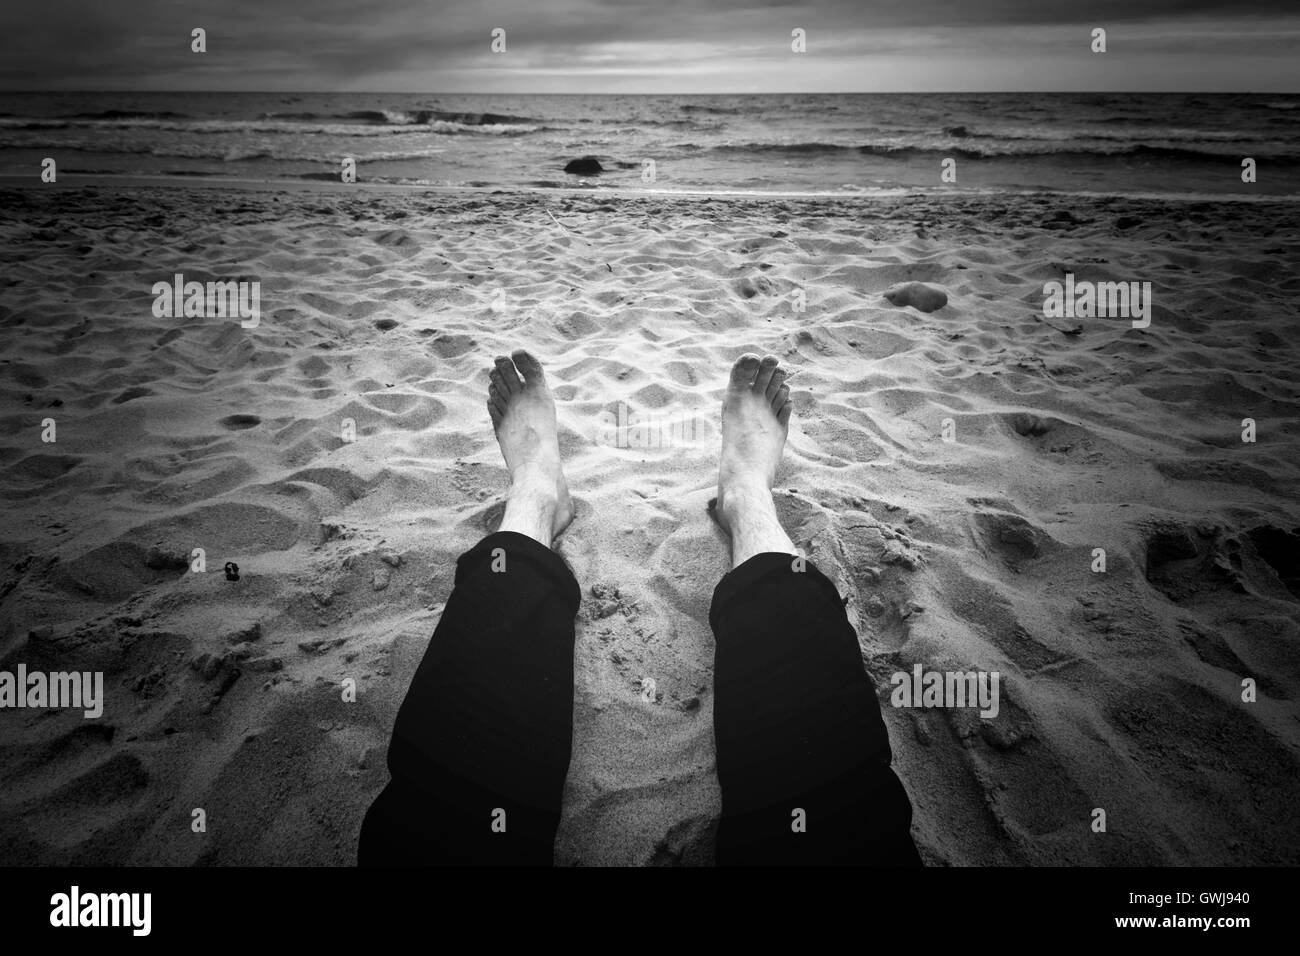 Lieu de destination. Homme assis sur la plage près de l'océan. Image en noir et blanc. Banque D'Images